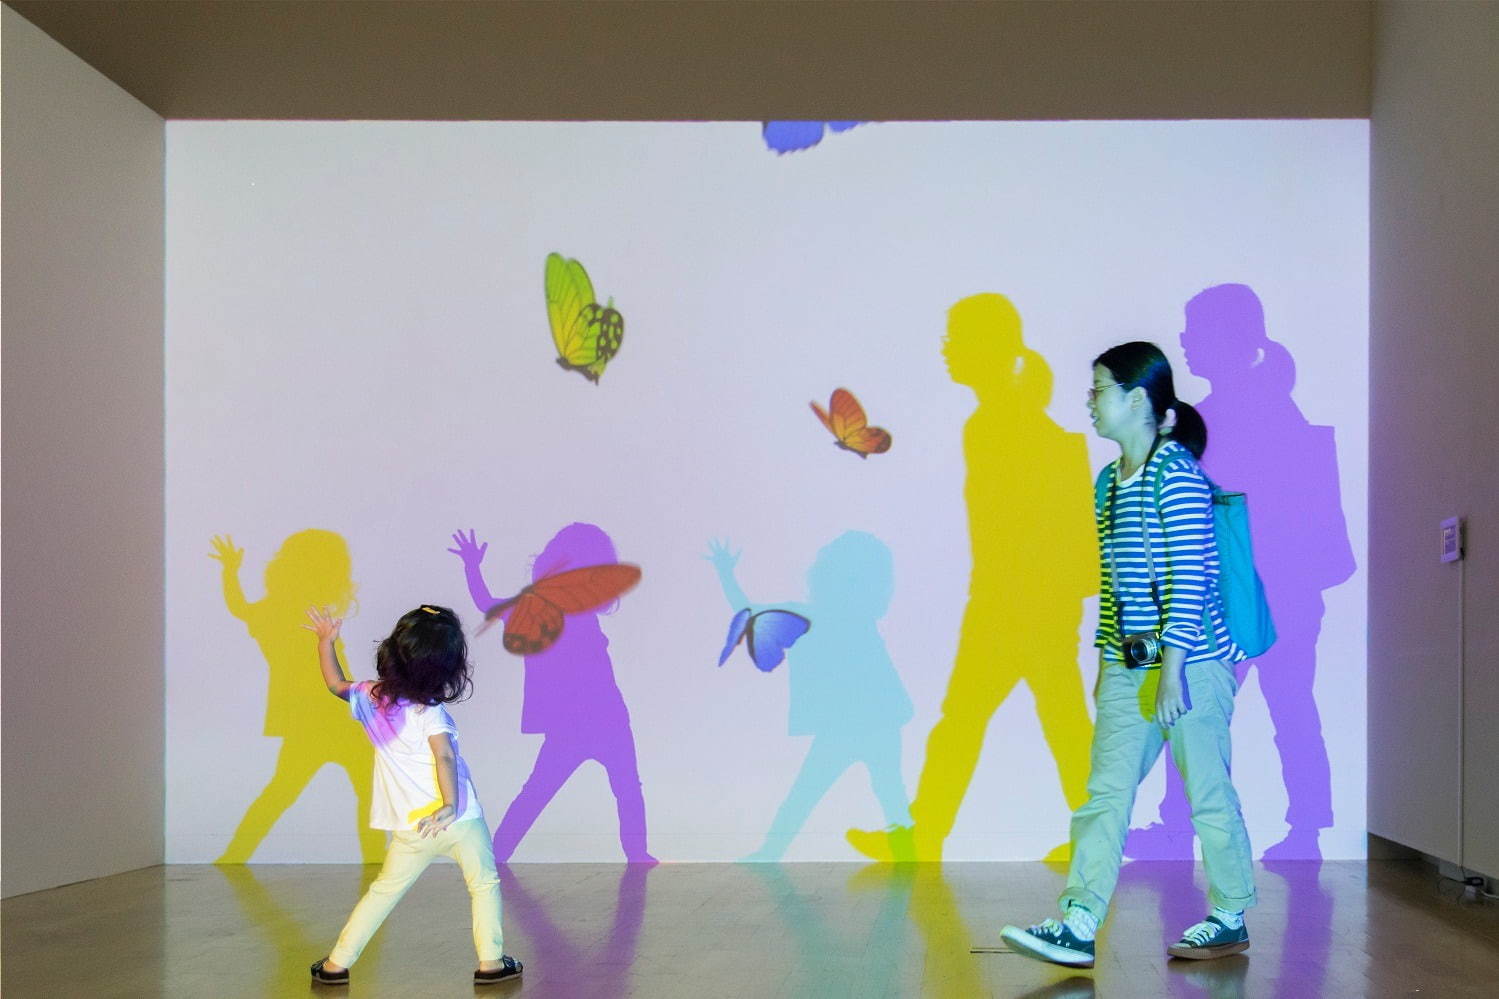 光と遊ぶ 魔法の美術館 新潟市新津美術館で 動作に合わせて変化する体感型アートの展覧会 ファッションプレス